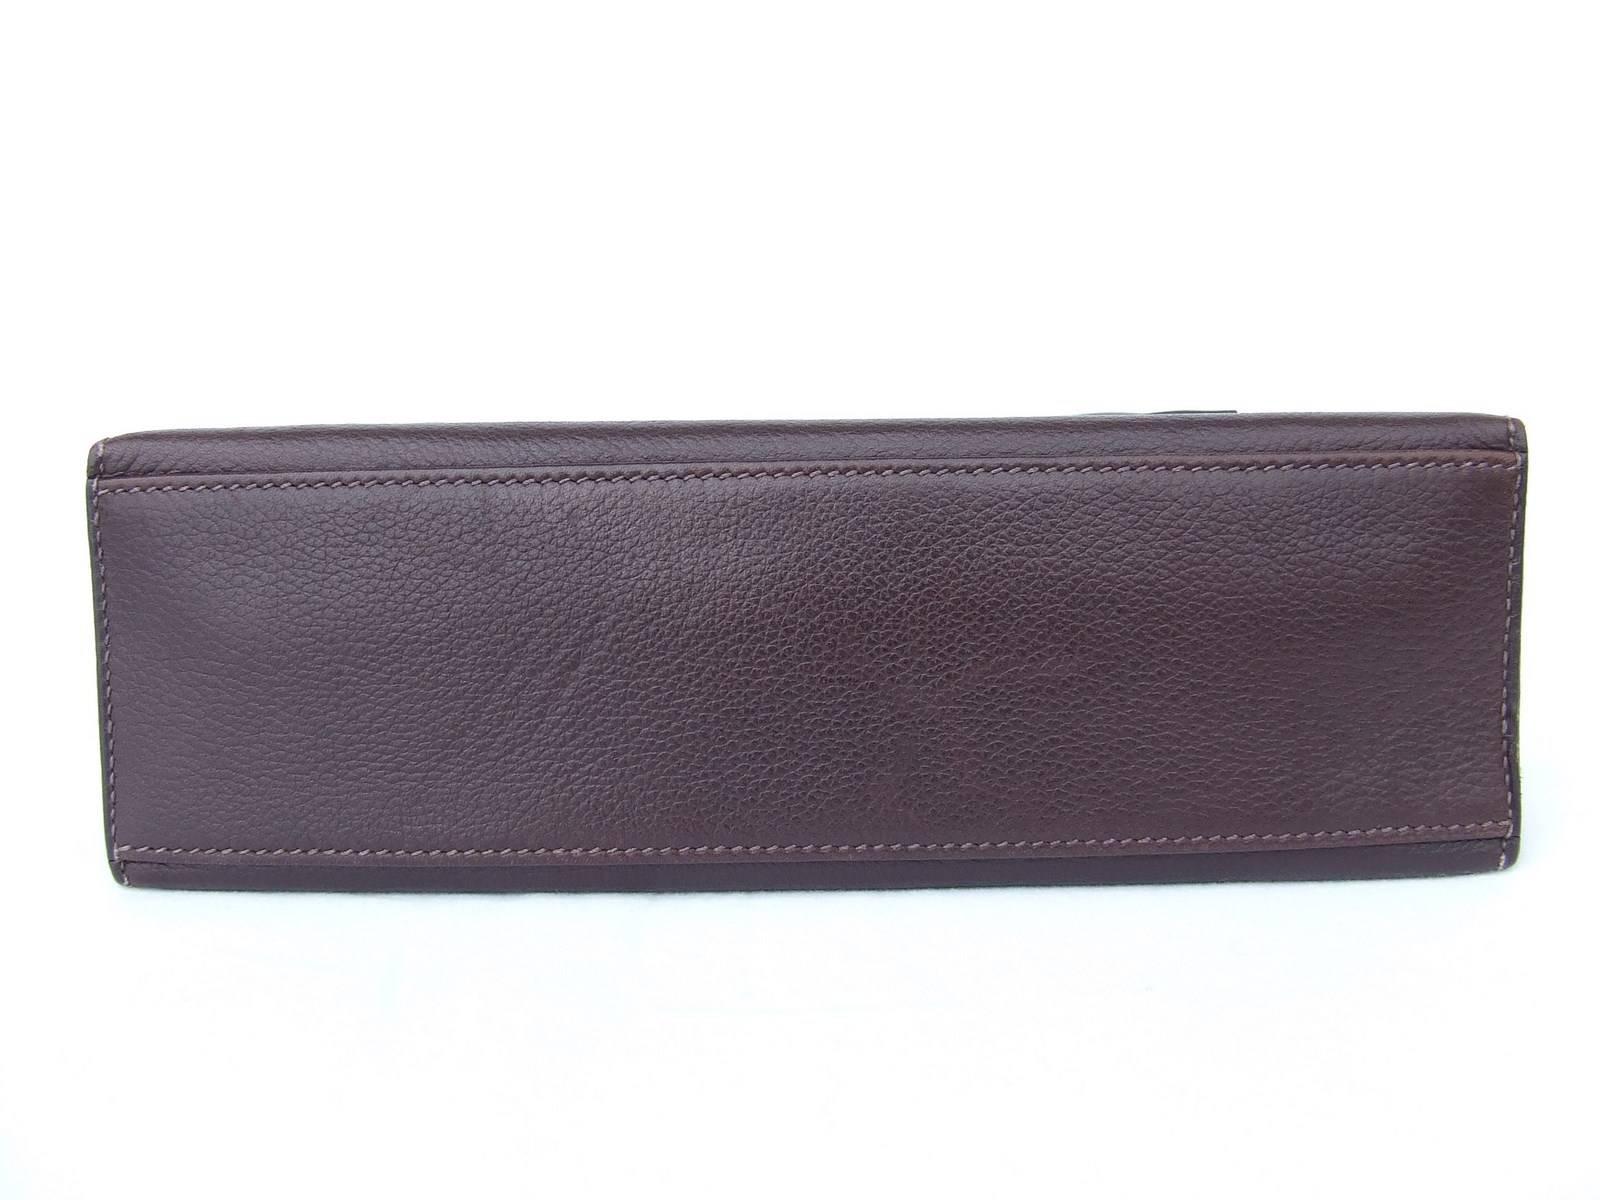 Hermes Kelly Pochette Clutch Handbag Havane Evergrain Leather GHW 22 cm ...